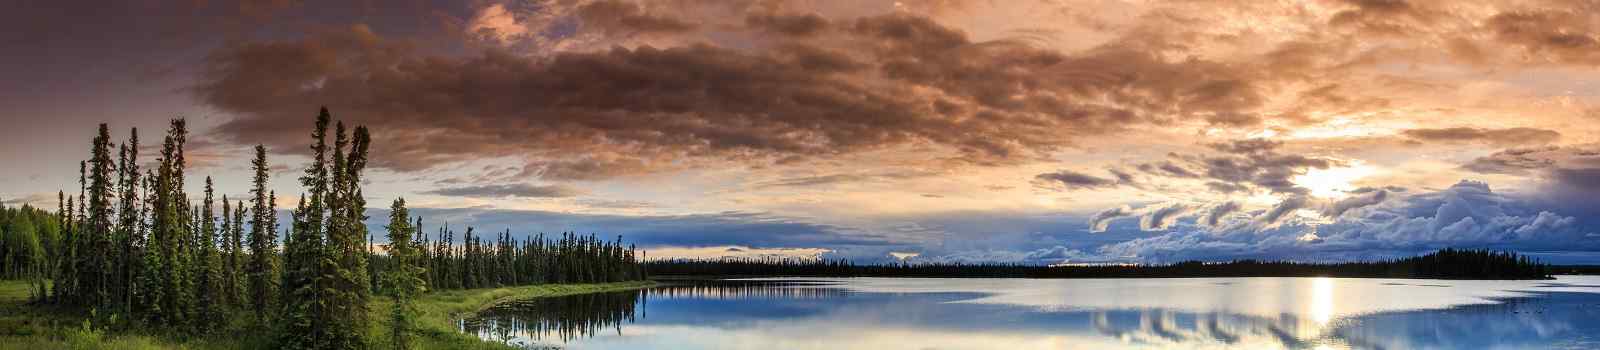 KL-USA-ALASKA-ENTDECKER-Alaskan summer - serene view of Wonder Lake  Denali National Park-shutterstock 1523673992